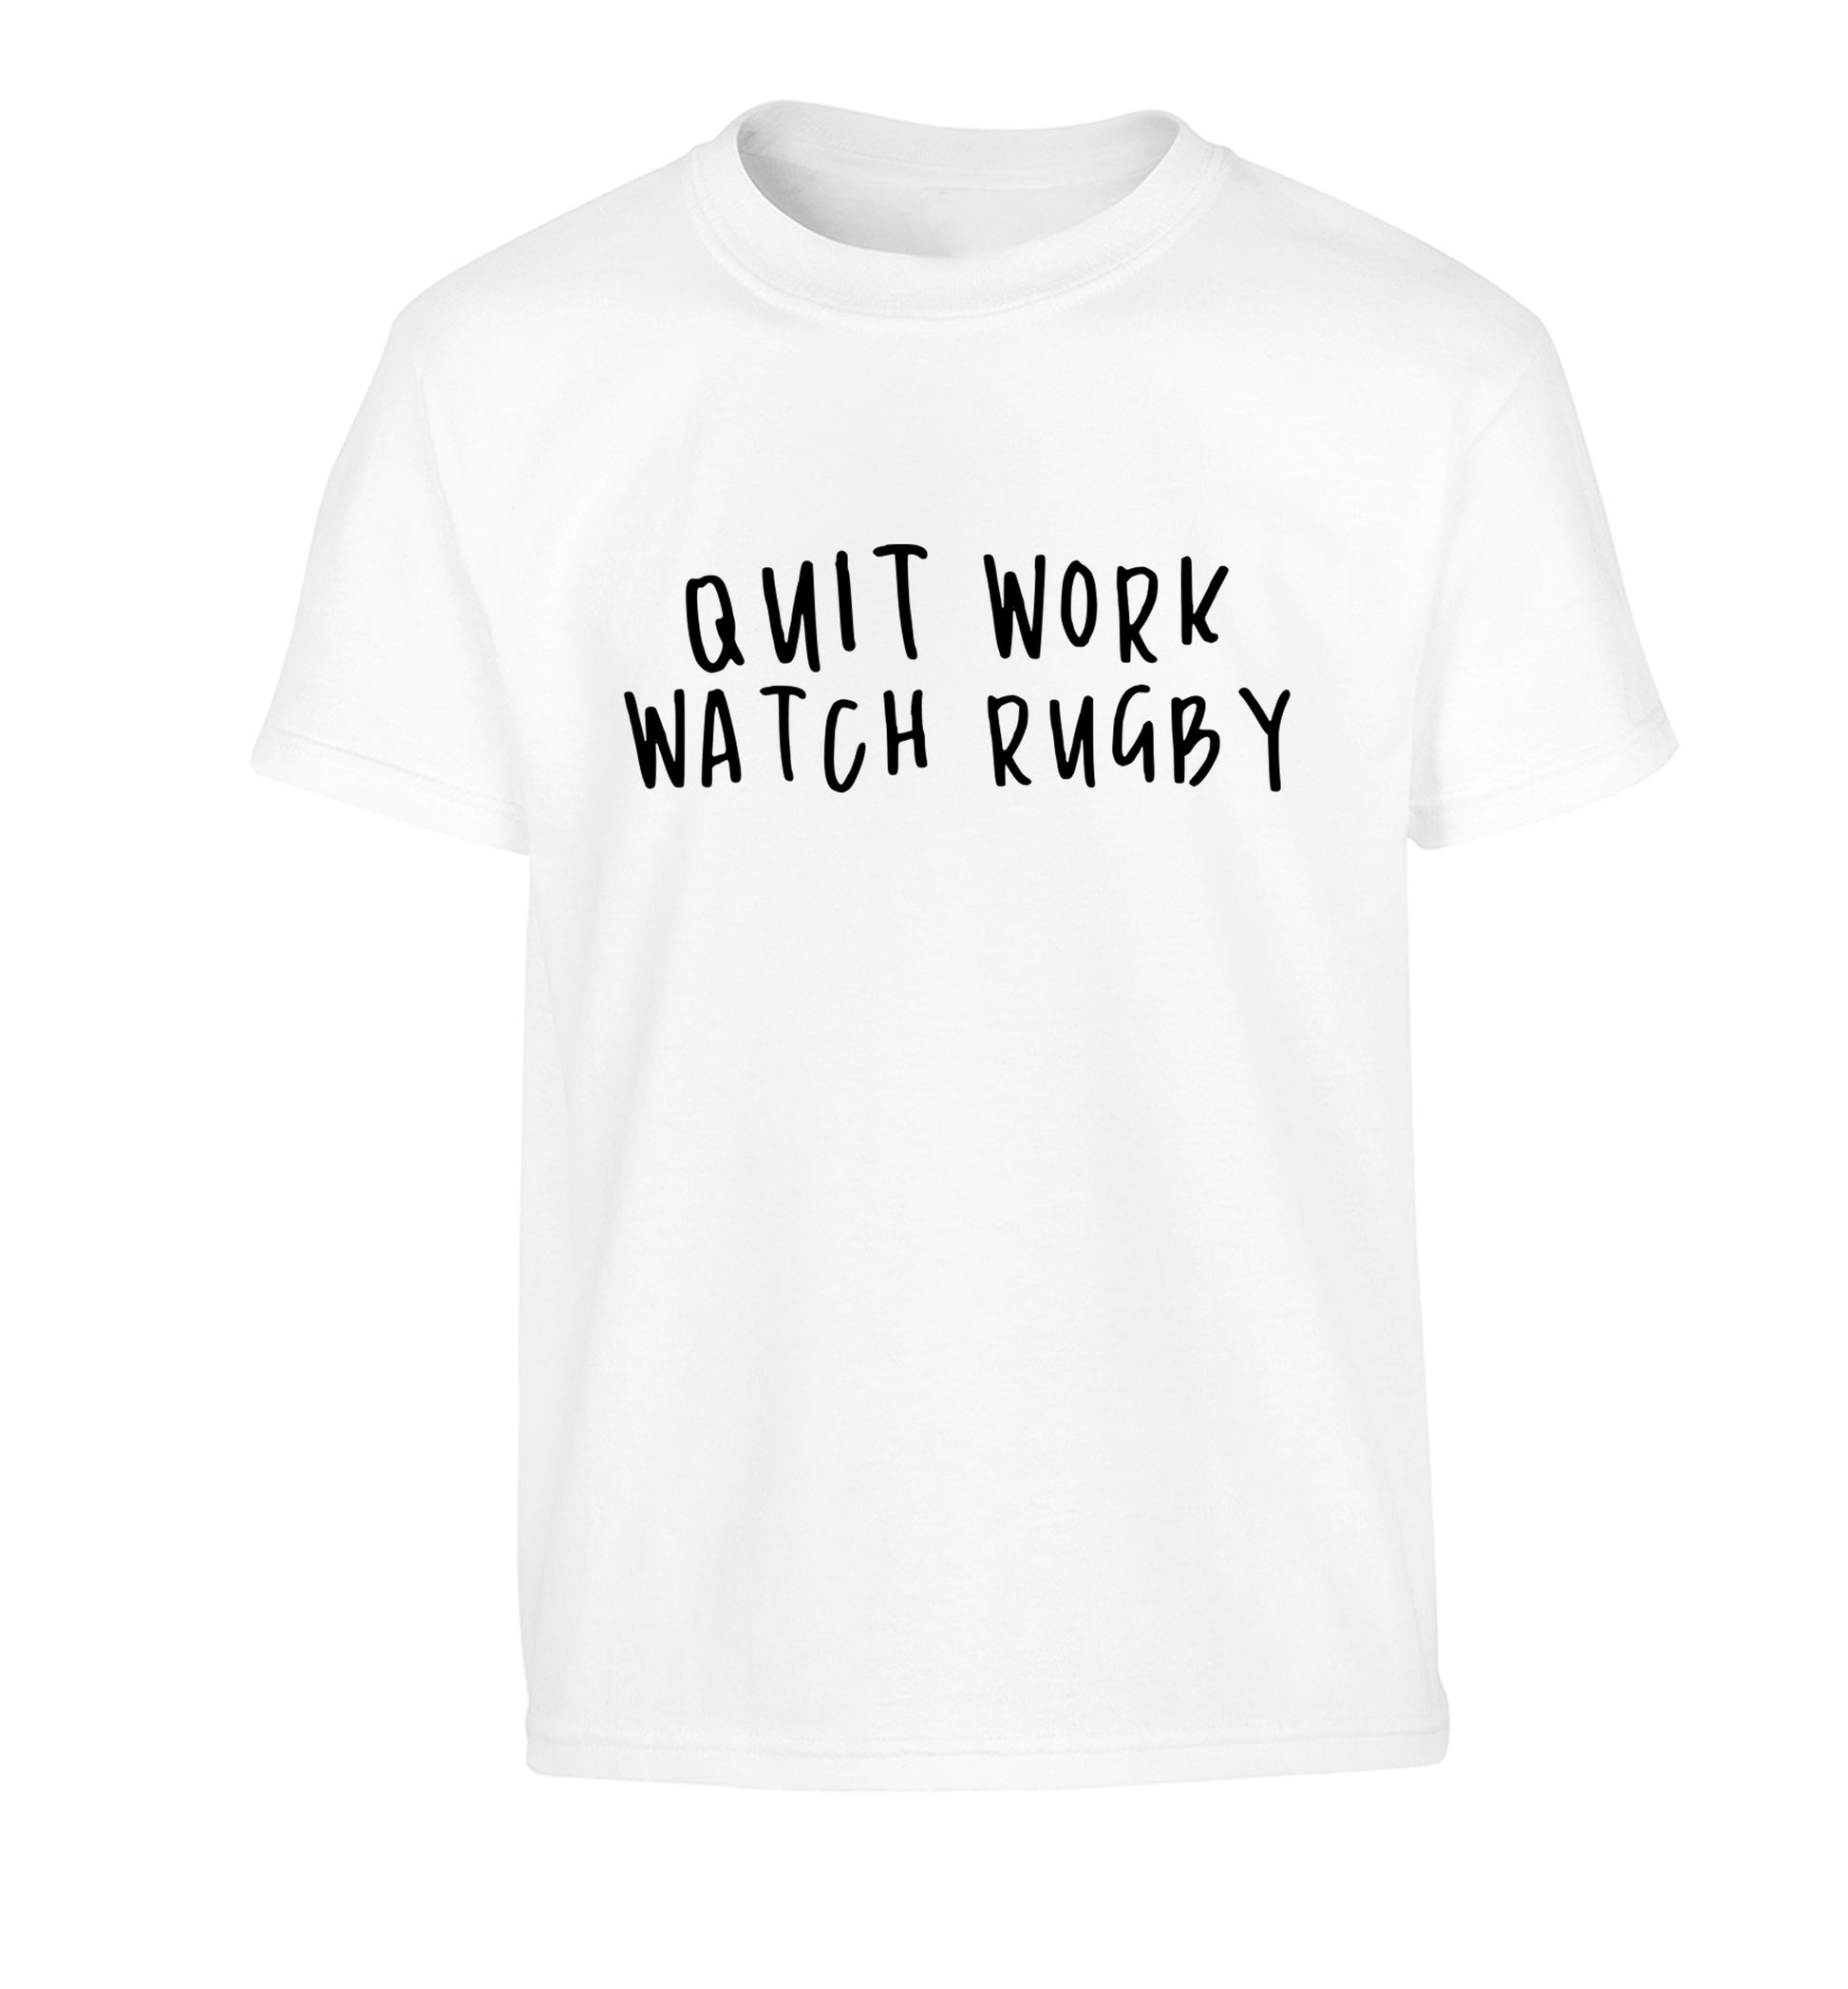 Quit work watch rugby Children's white Tshirt 12-13 Years